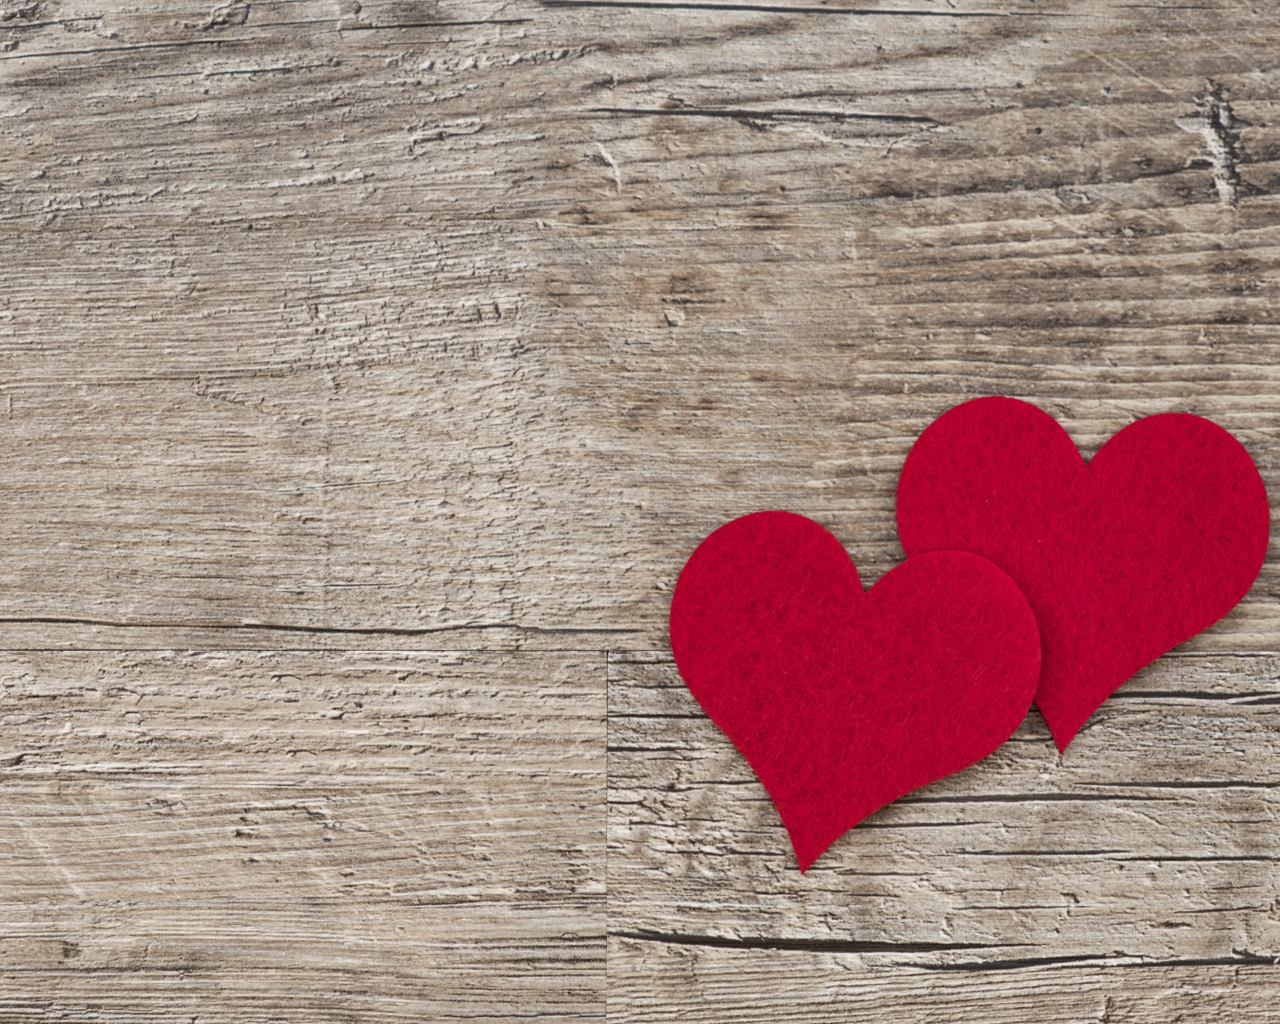 Два красных сердца на деревянном столе